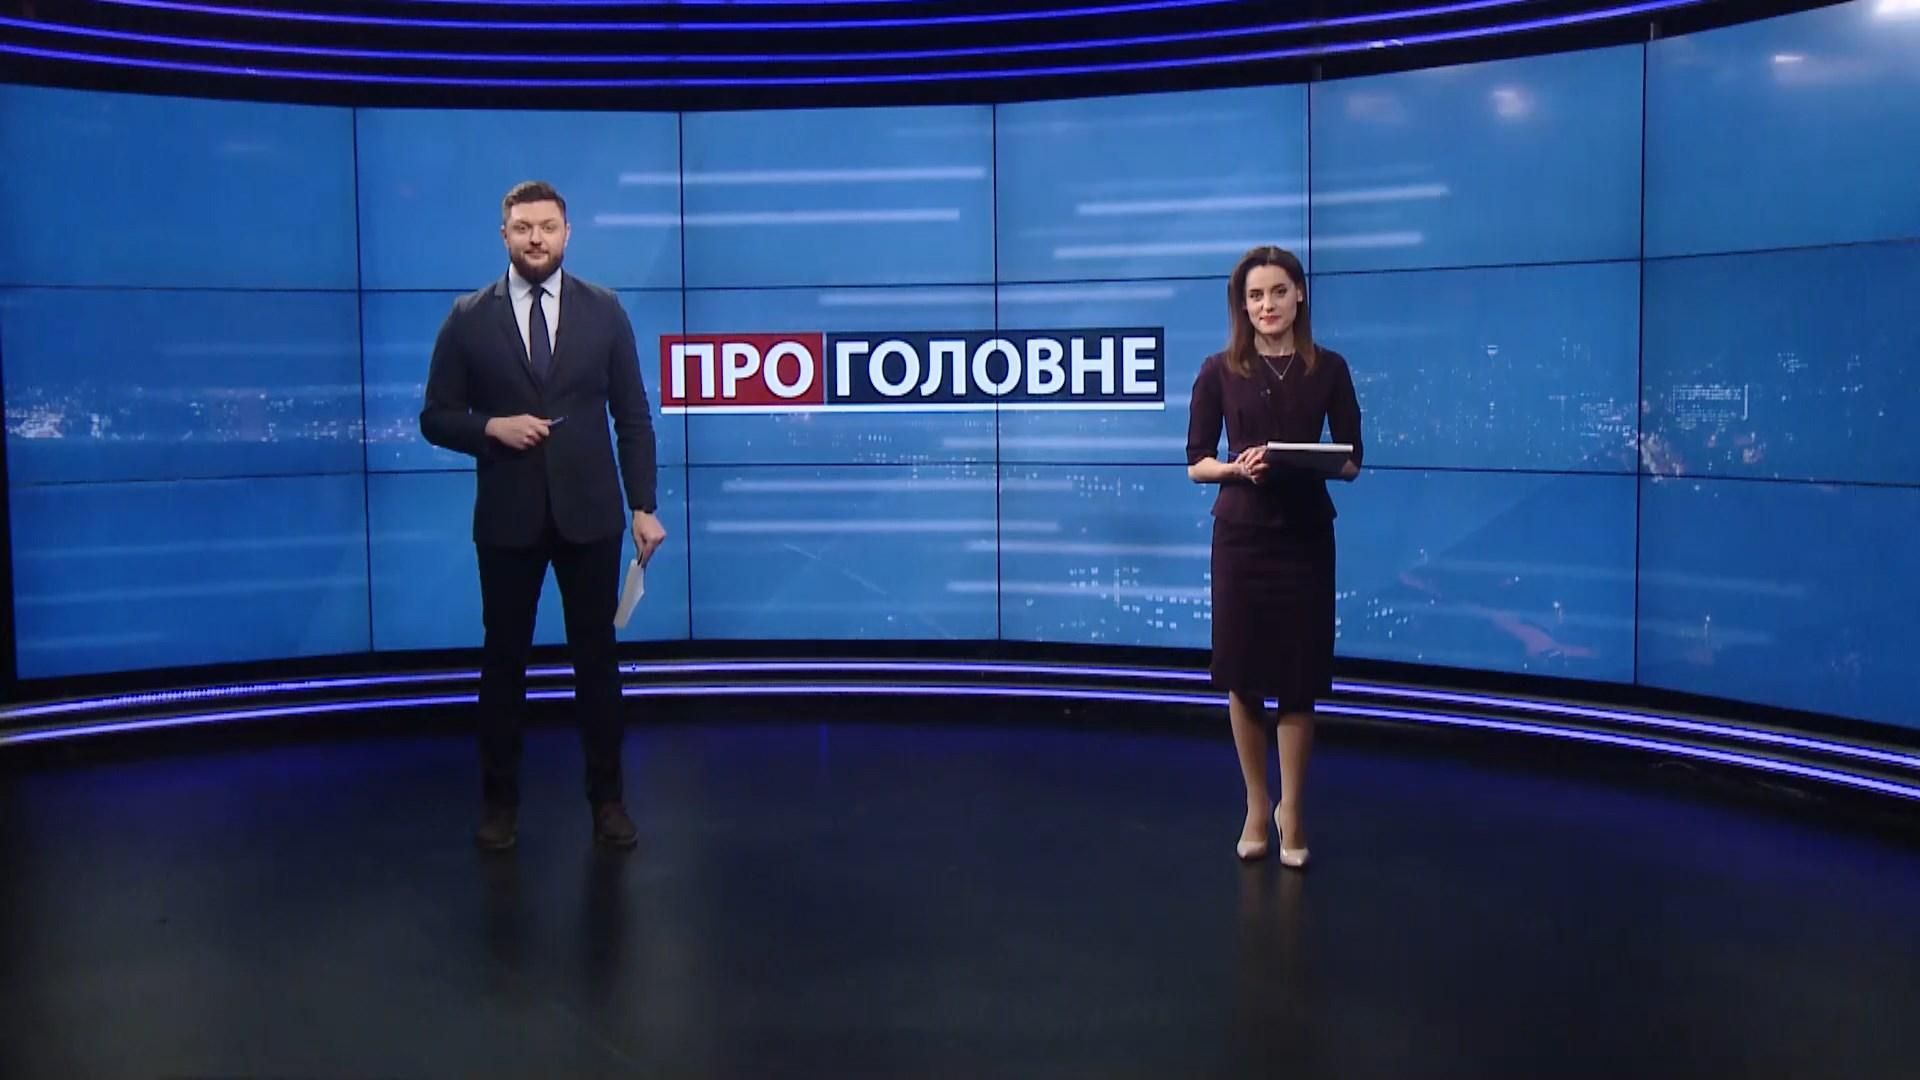 Про головне: Депутат "виграв" 2 мільйона в лотереї. Другий суд над Навальним